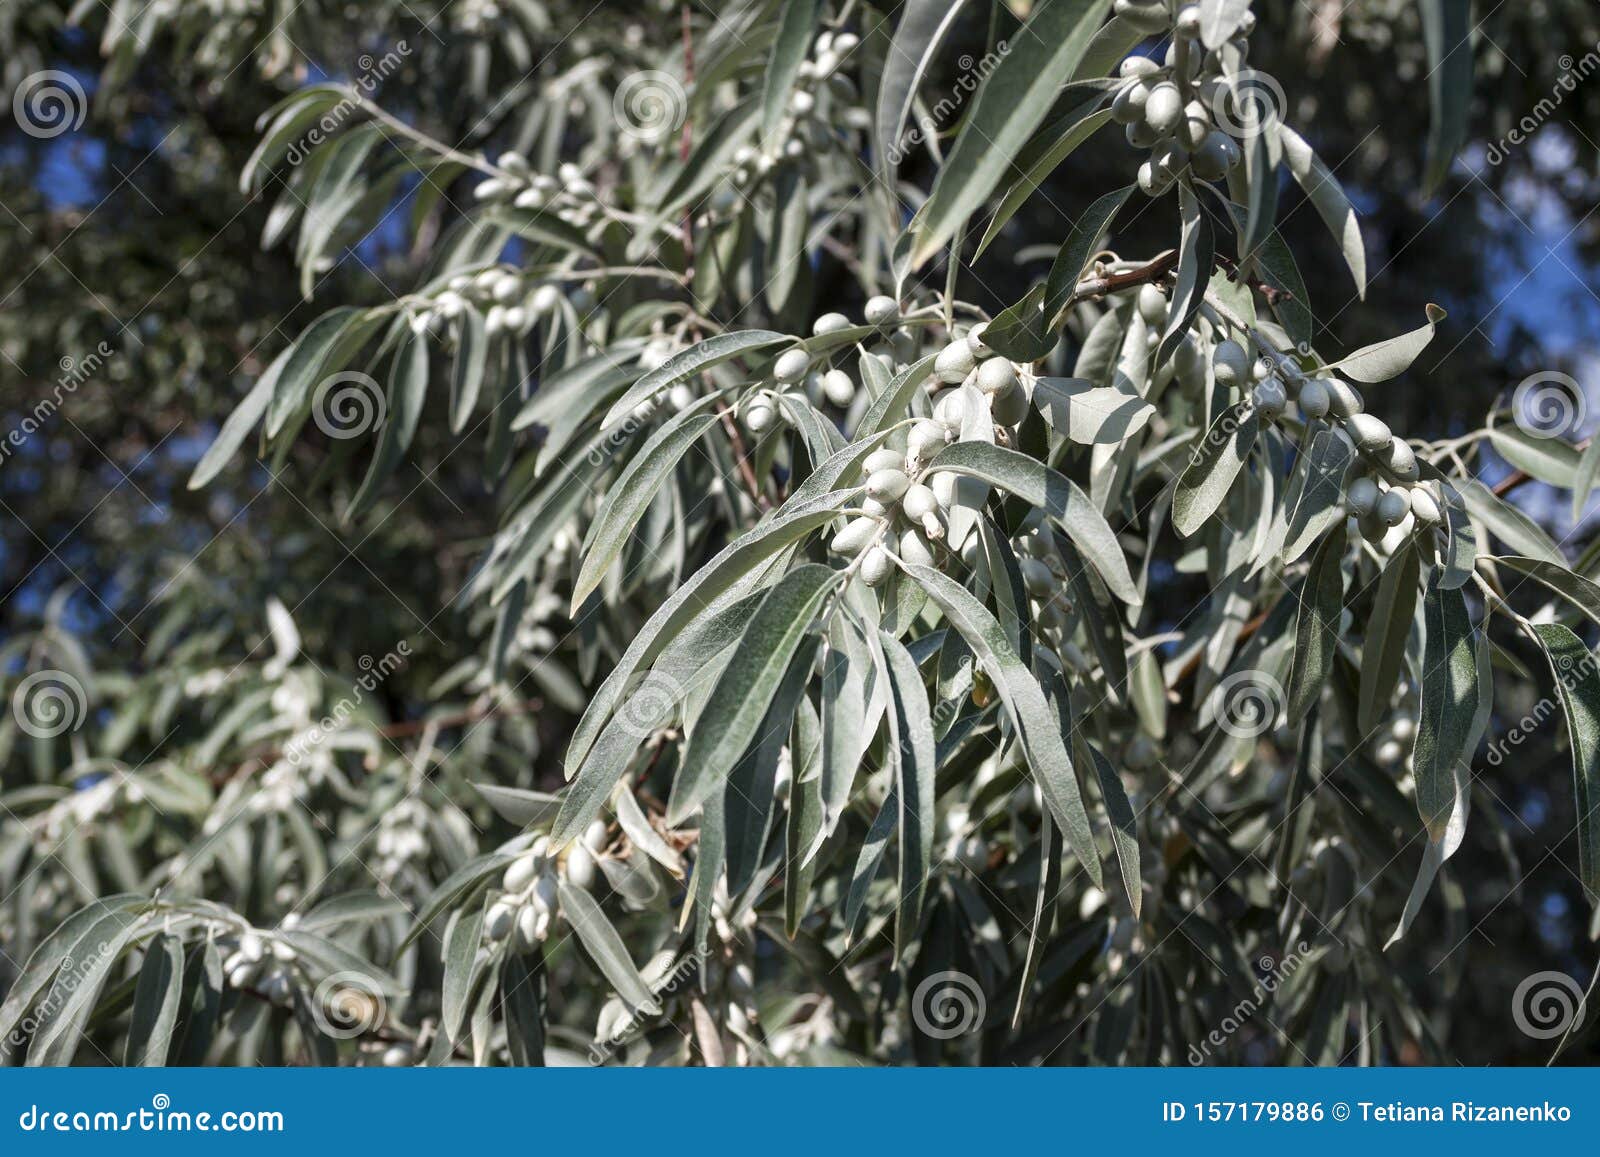 Серебряные кусты дикой маслины окруженные. Лох серебристый Дикая маслина. Дикая олива серебристая. Elaeagnus angustifolia. Олива Крымская серебристая.